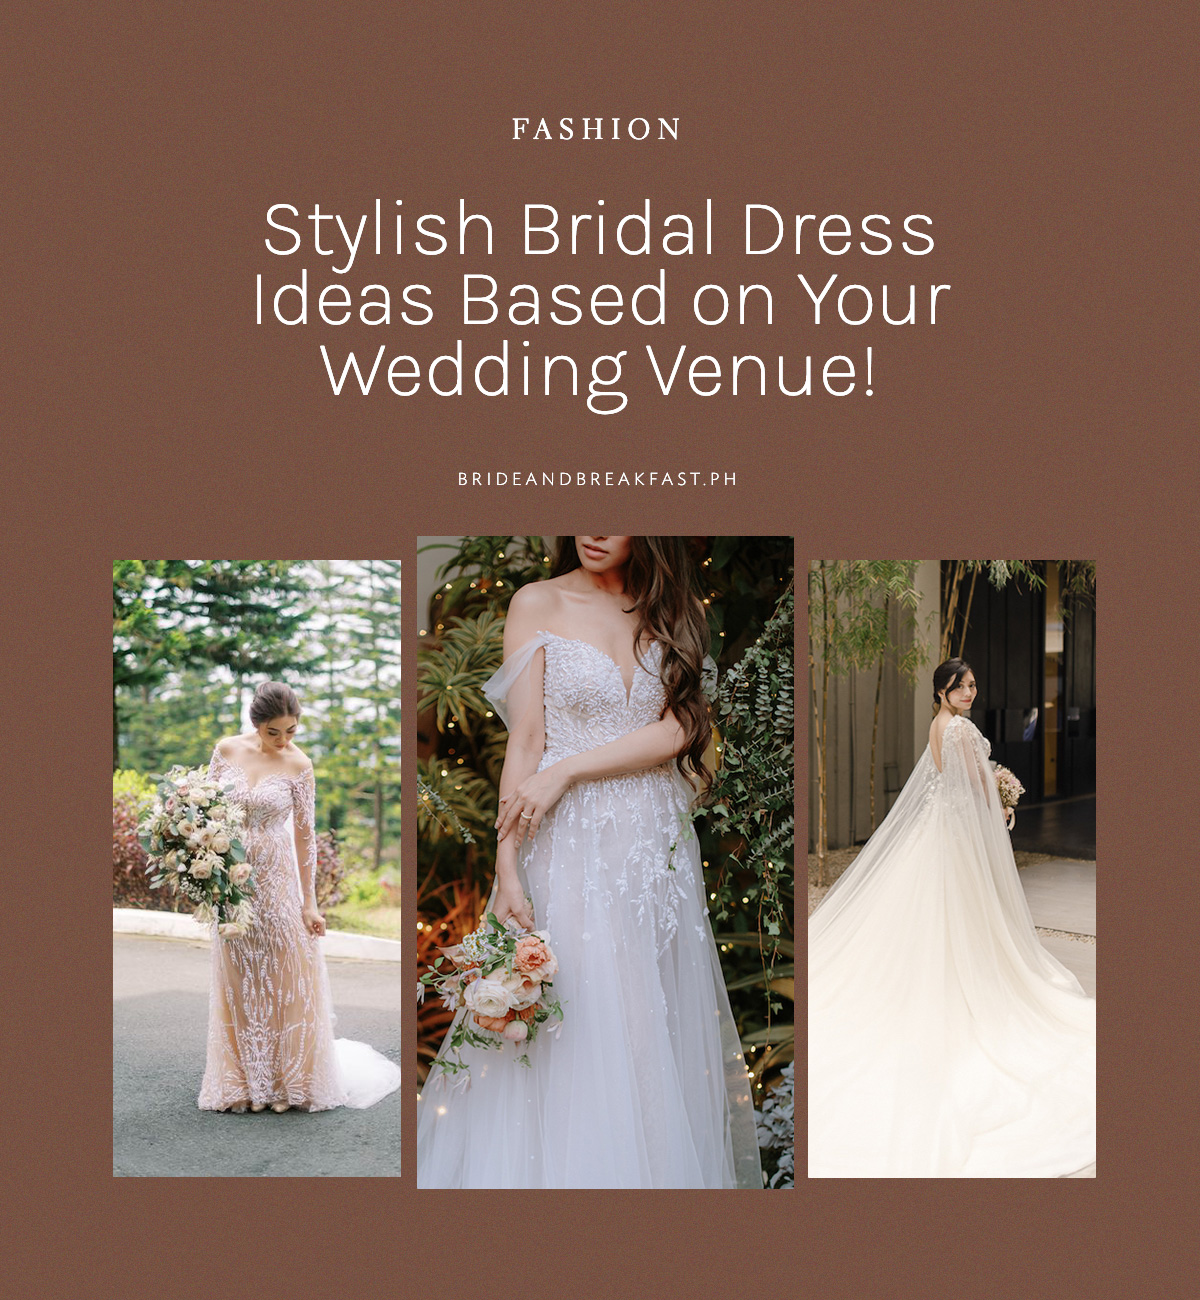 Stylish Bridal Dress Ideas Based on Your Wedding Venue!